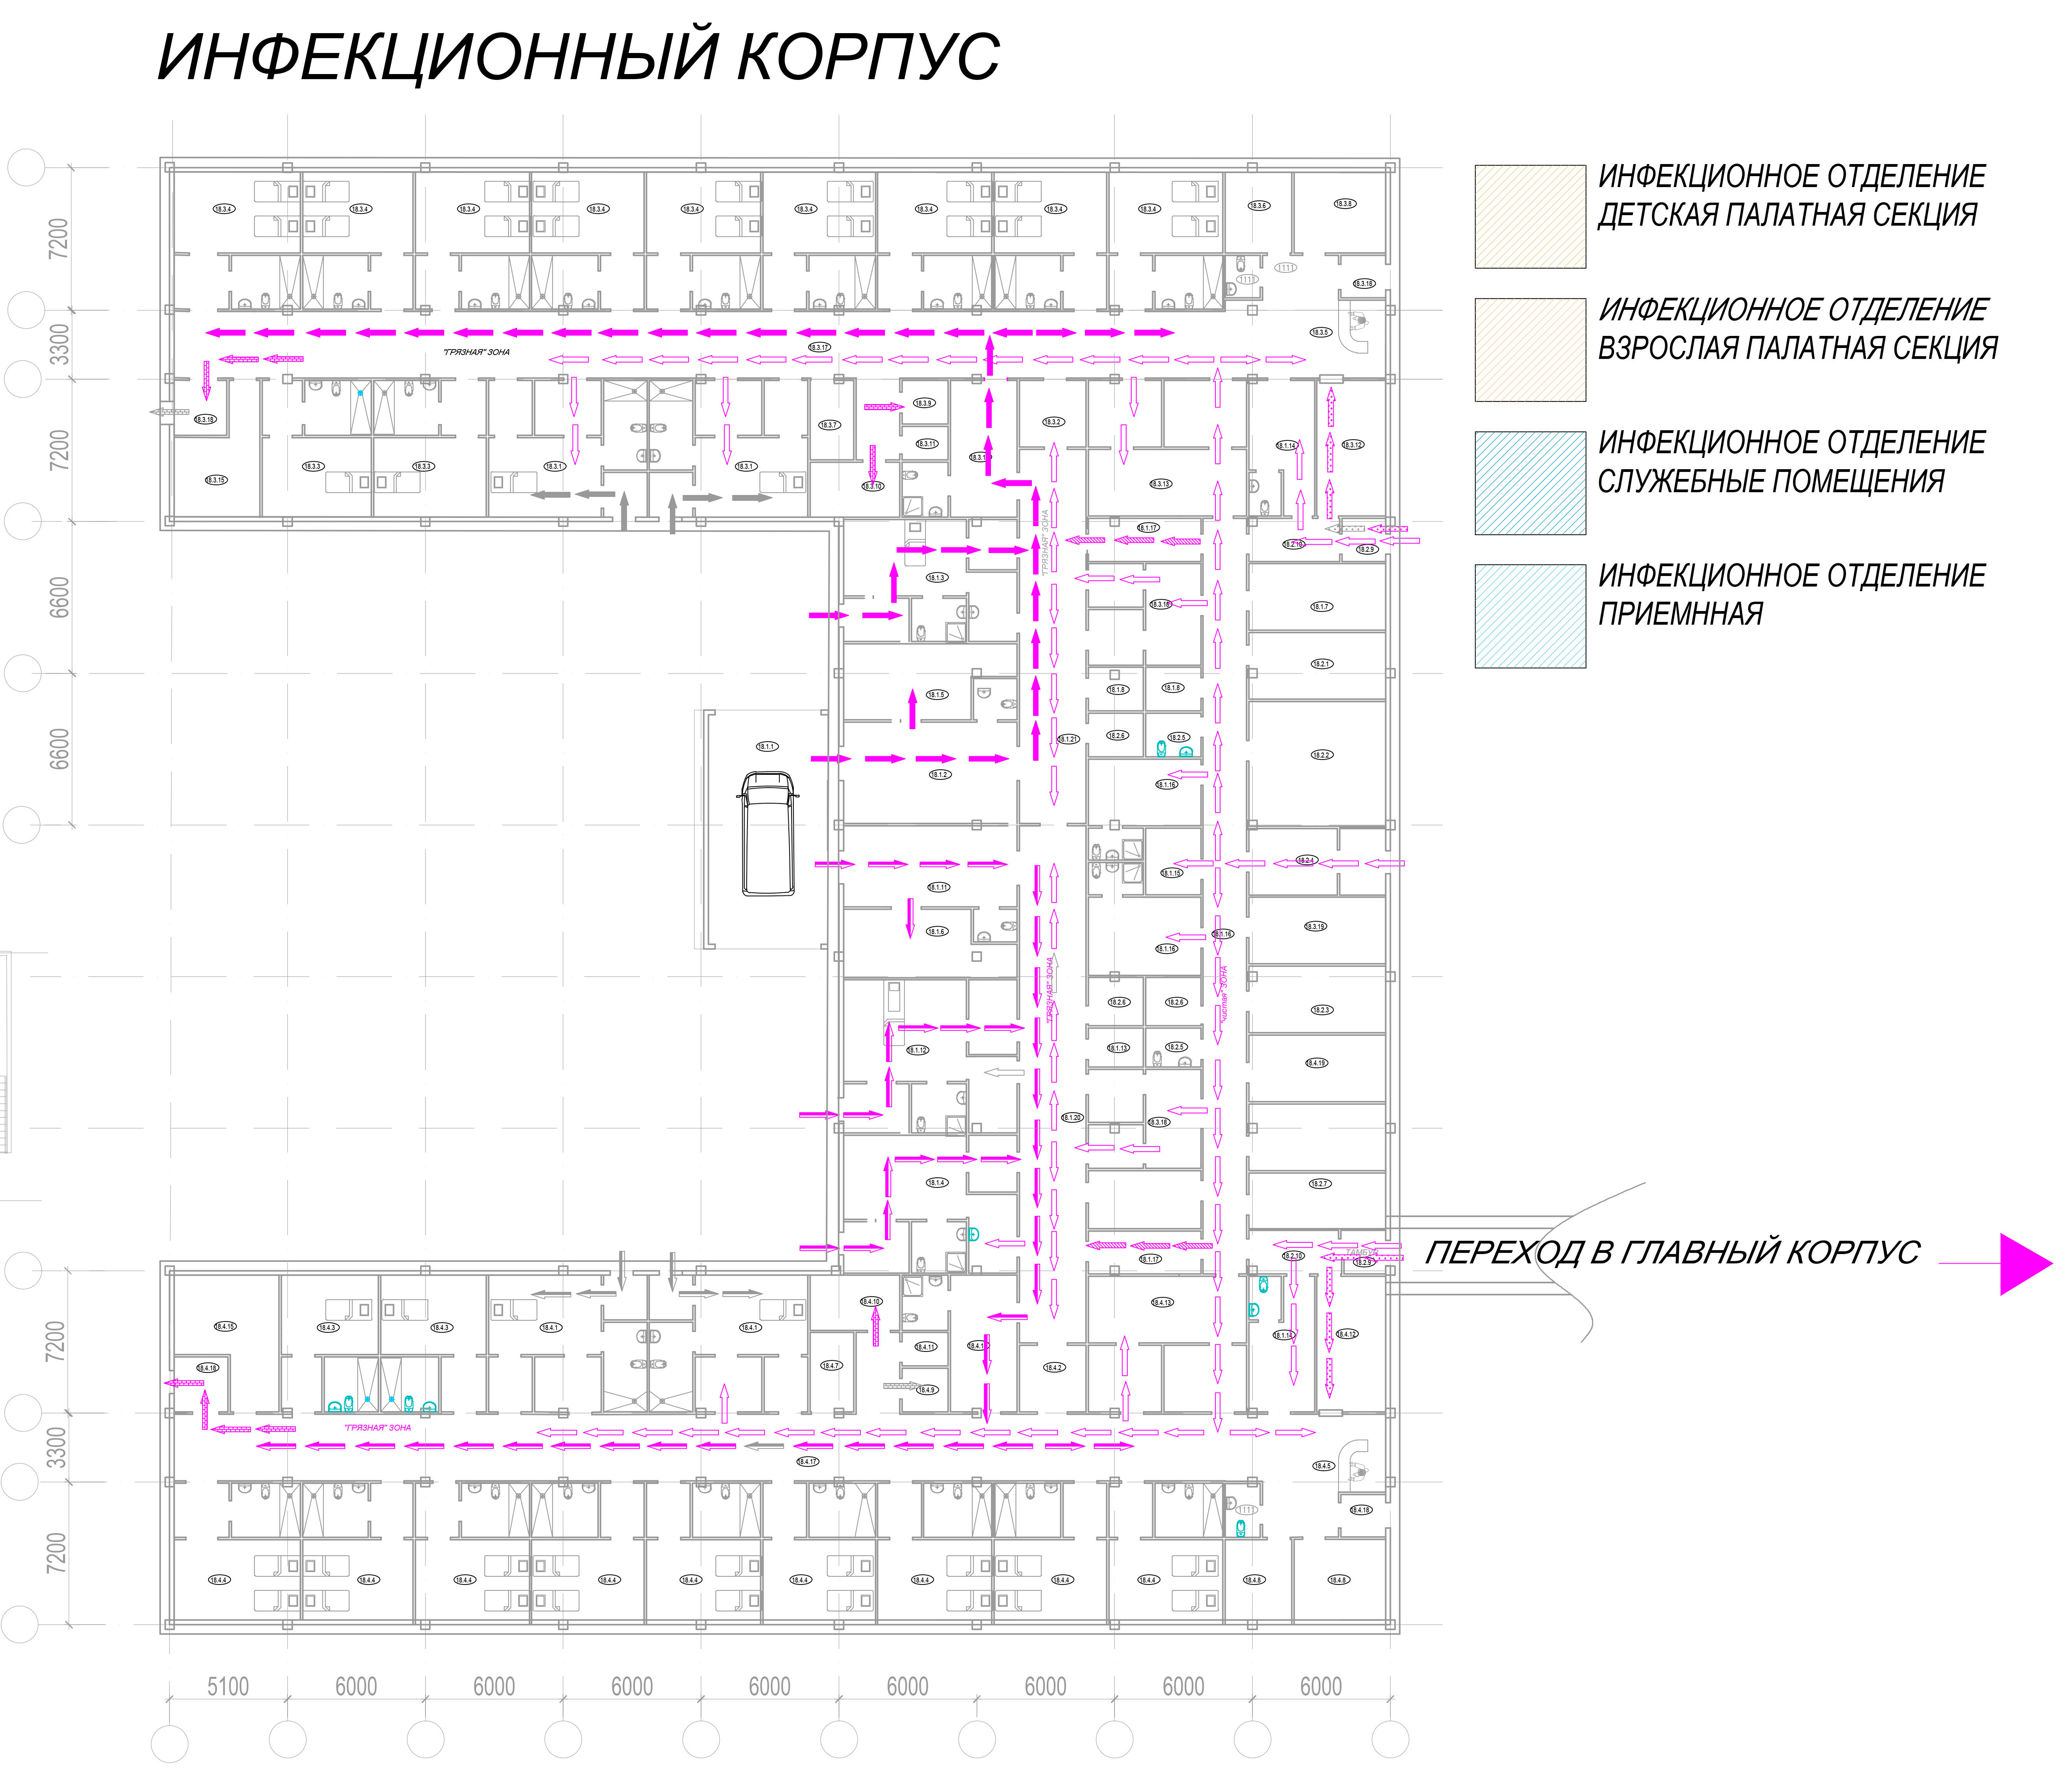 Проект центральной районной больницы проектной мощностью на 400 коек. ООО «Профиль», г. Санкт- Петербург